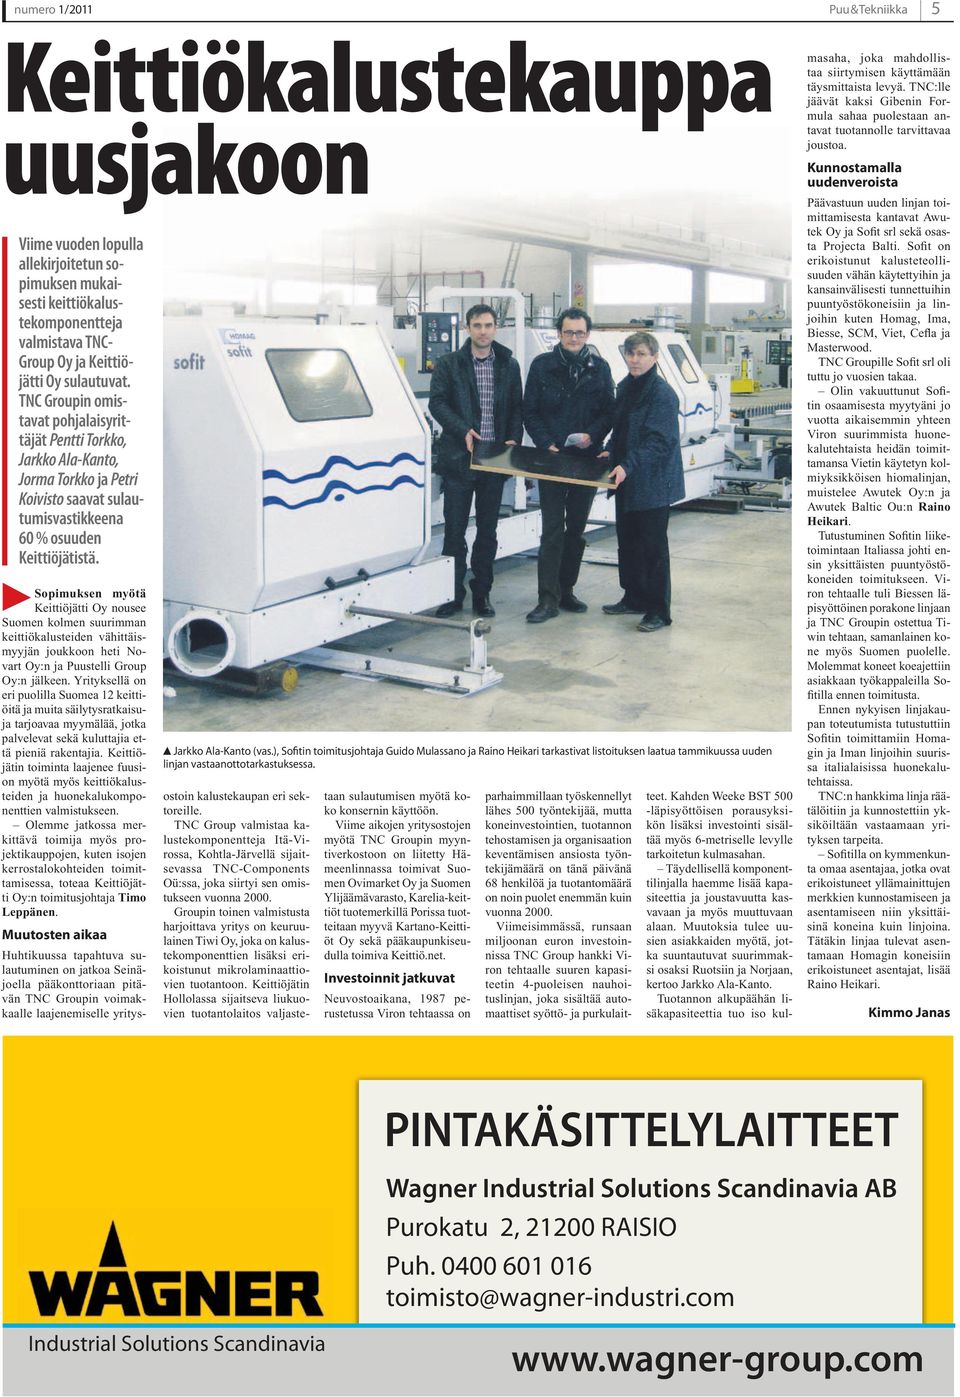 Sopimuksen myötä Keittiöjätti Oy nousee Suomen kolmen suurimman keittiökalusteiden vähittäismyyjän joukkoon heti Novart Oy:n ja Puustelli Group Oy:n jälkeen.